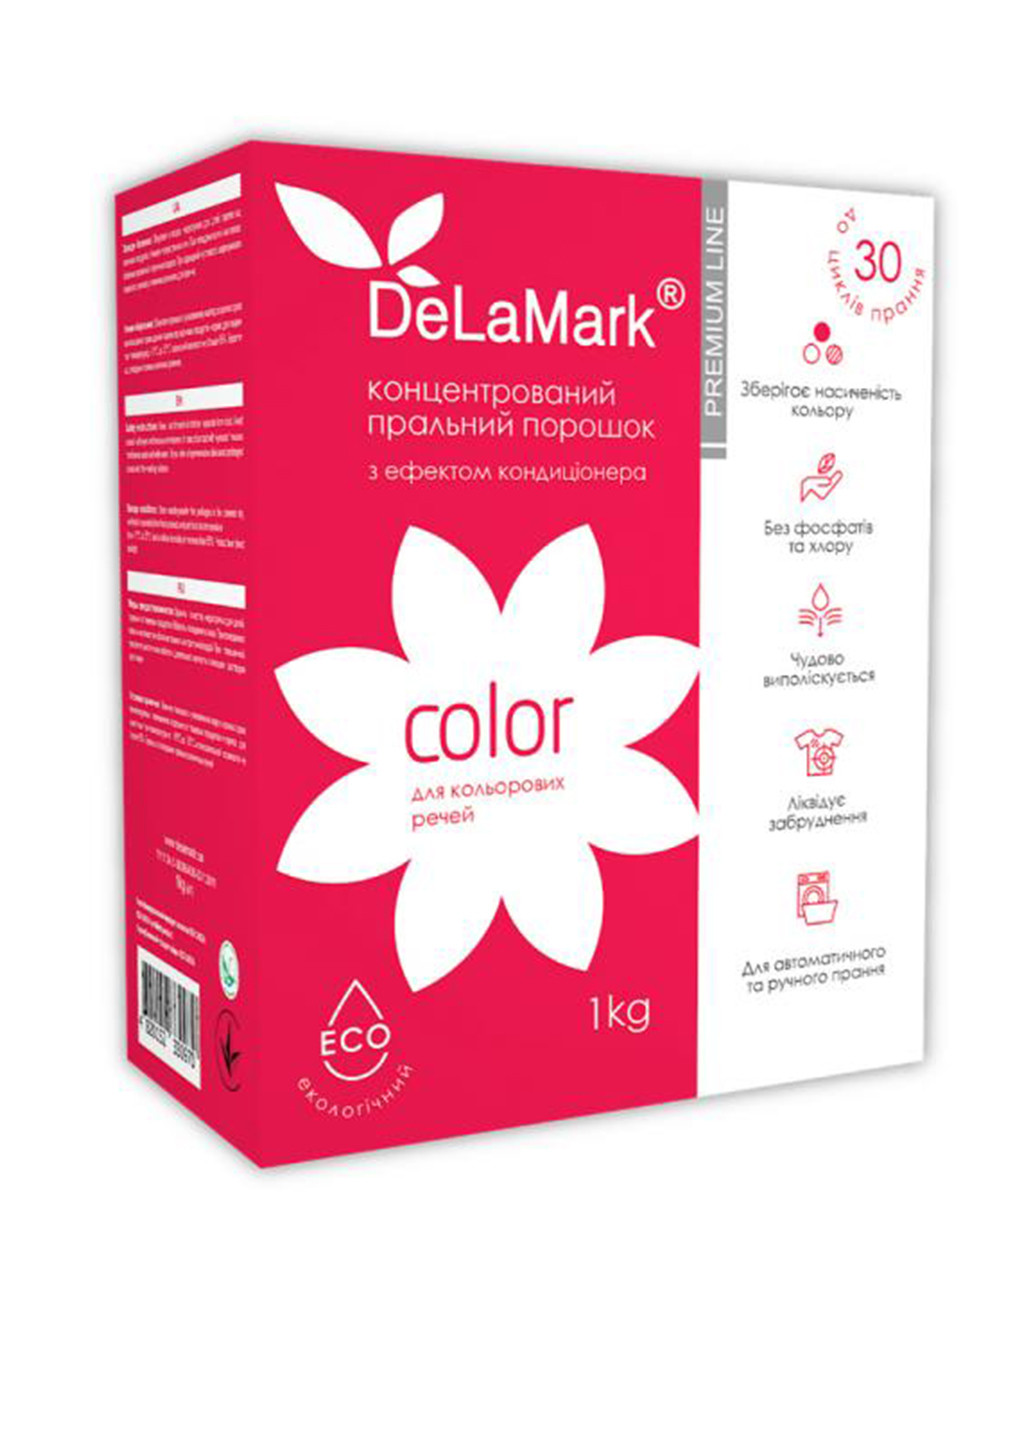 Порошок с эффектом кондиционера Mark Royal Powder Color, 1 кг De La Mark (132543268)